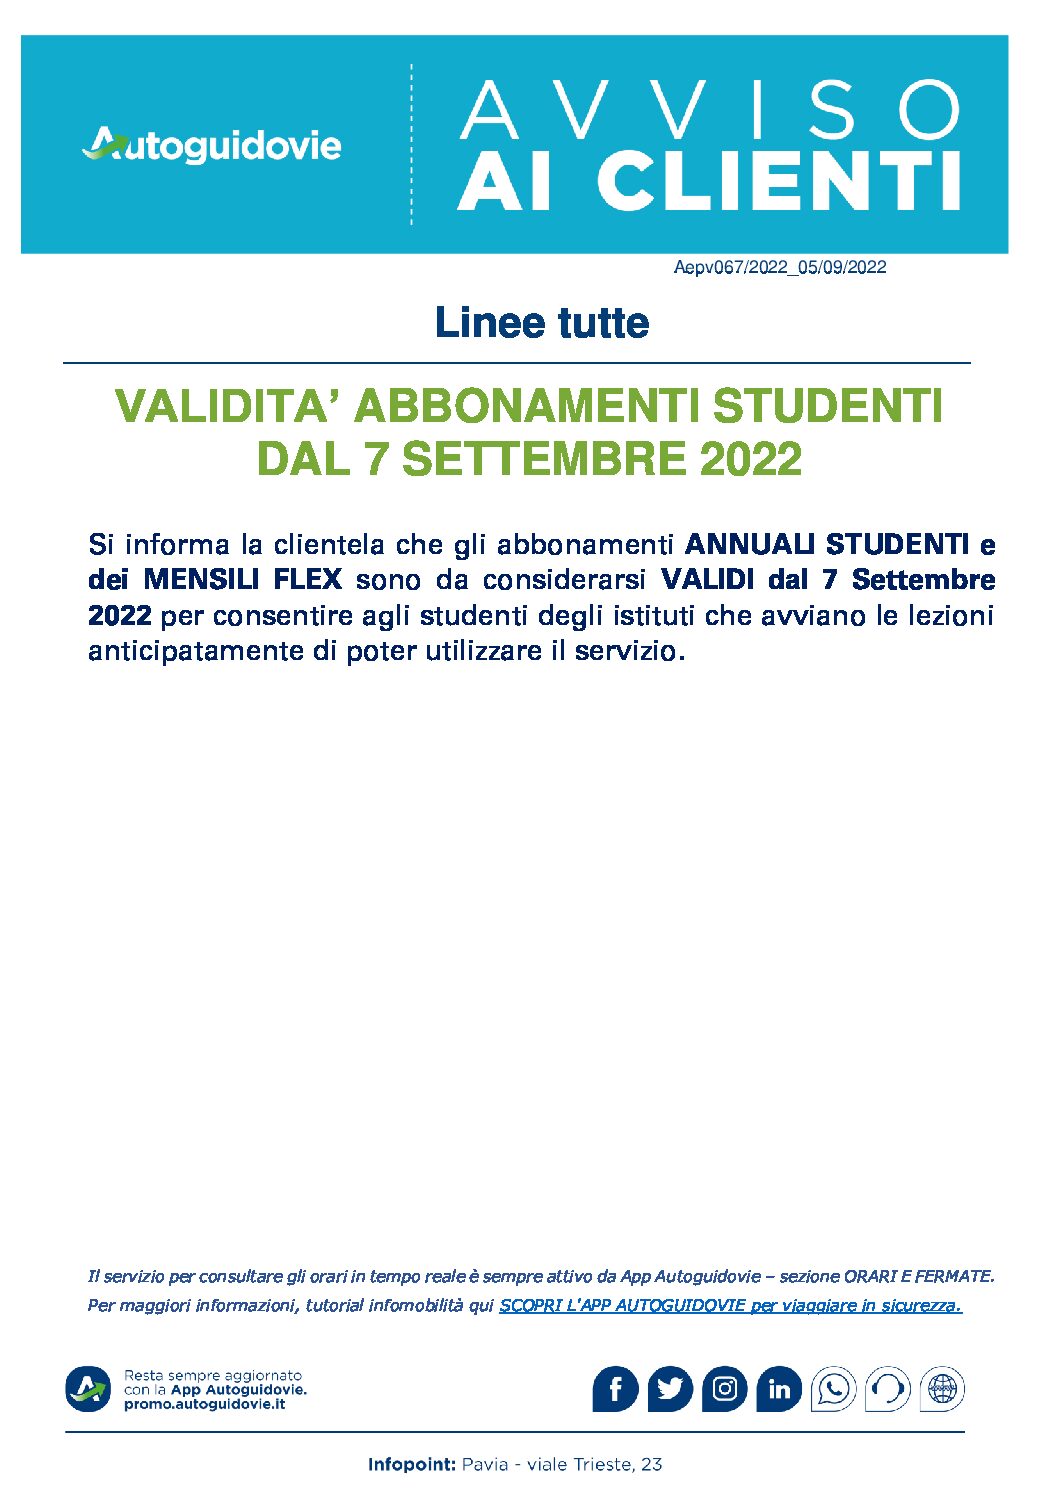 AUTOGUIDOVIE: VALIDITA’ ABBONAMENTI STUDENTI DAL 7 SETTEMBRE 2022.